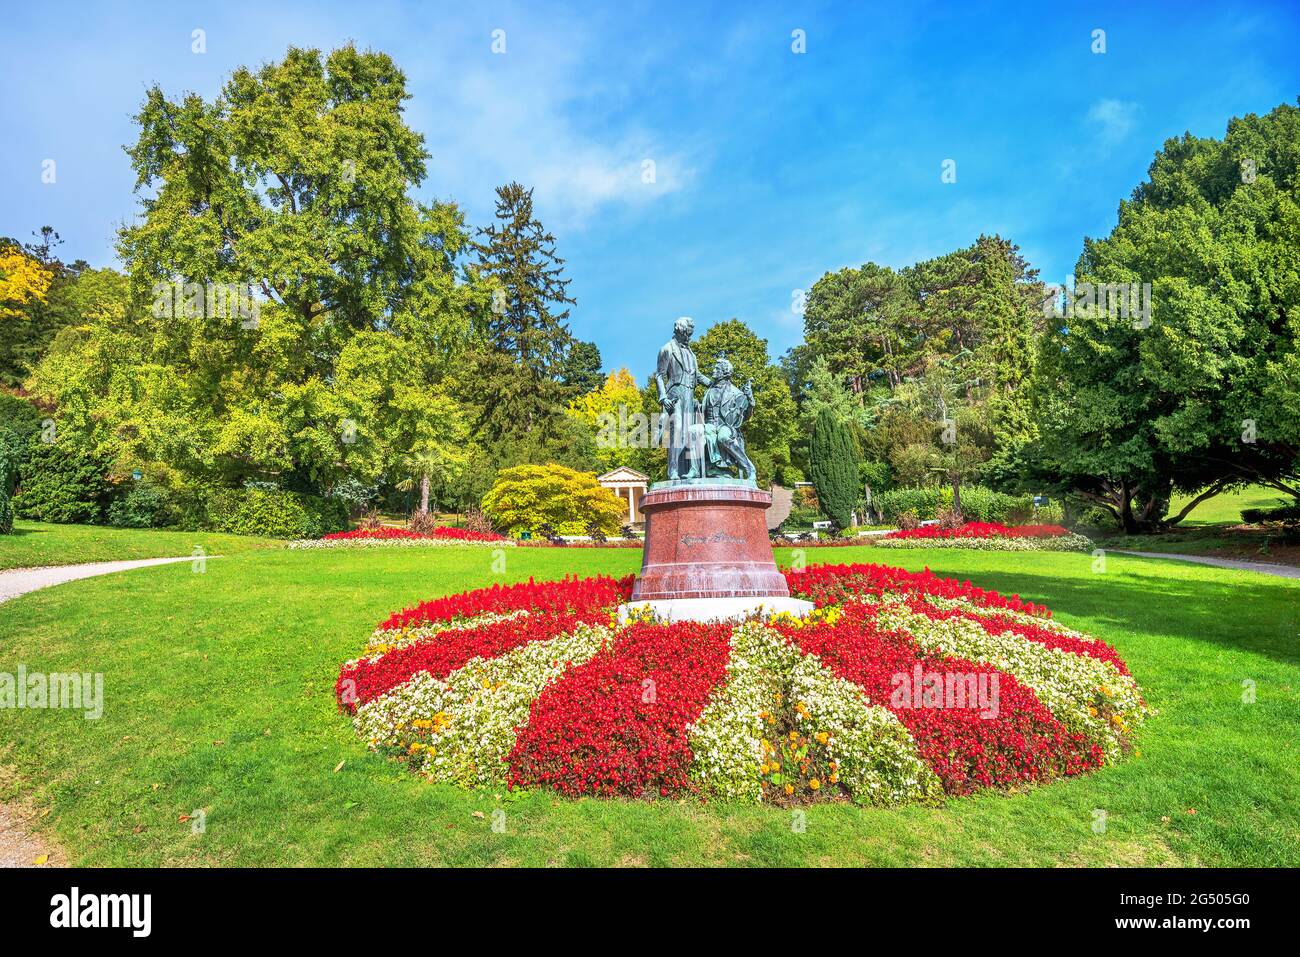 Monumento a los compositores Joseph Lanner y Johann Strauss en el parque en la ciudad balneario austríaca. Baden cerca de Viena, Austria Foto de stock